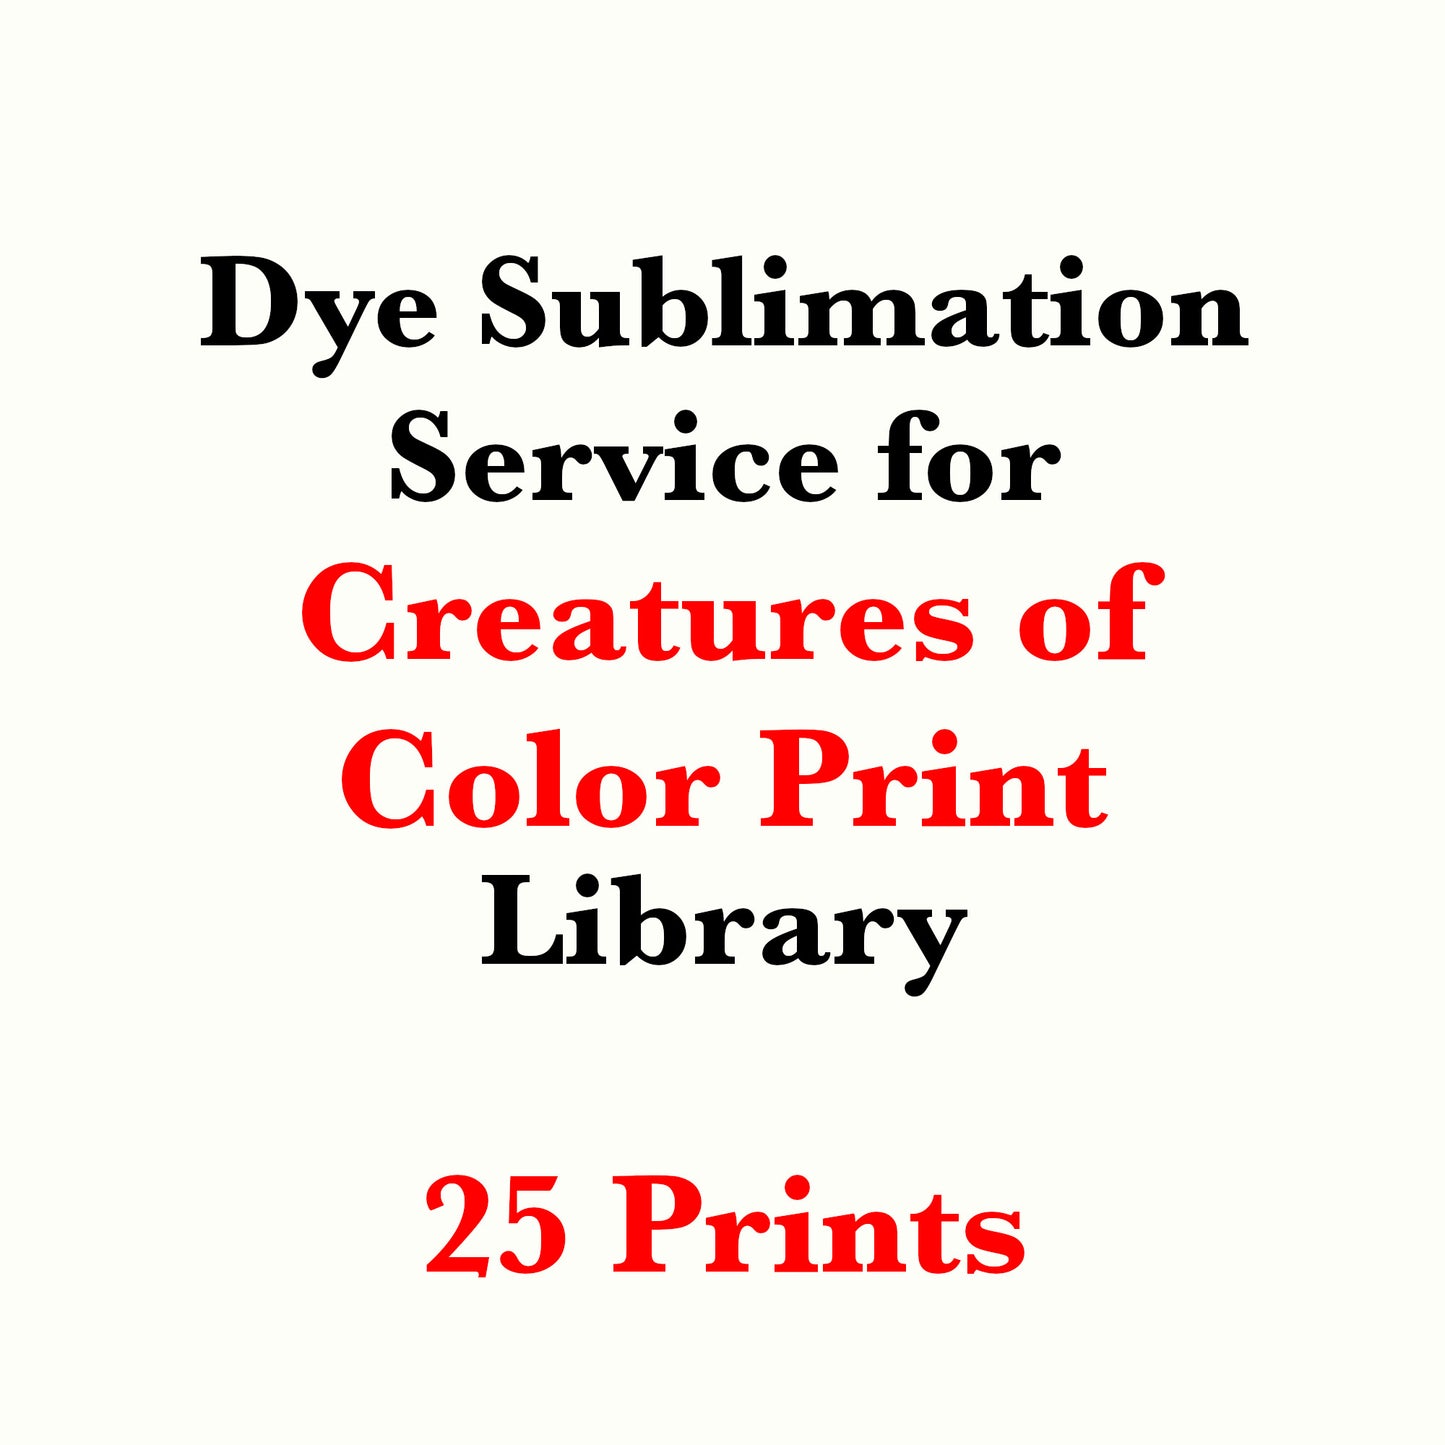 Servicio de sublimación de tinta para Creatures of Color Print Library (Se vende cortado a medida)